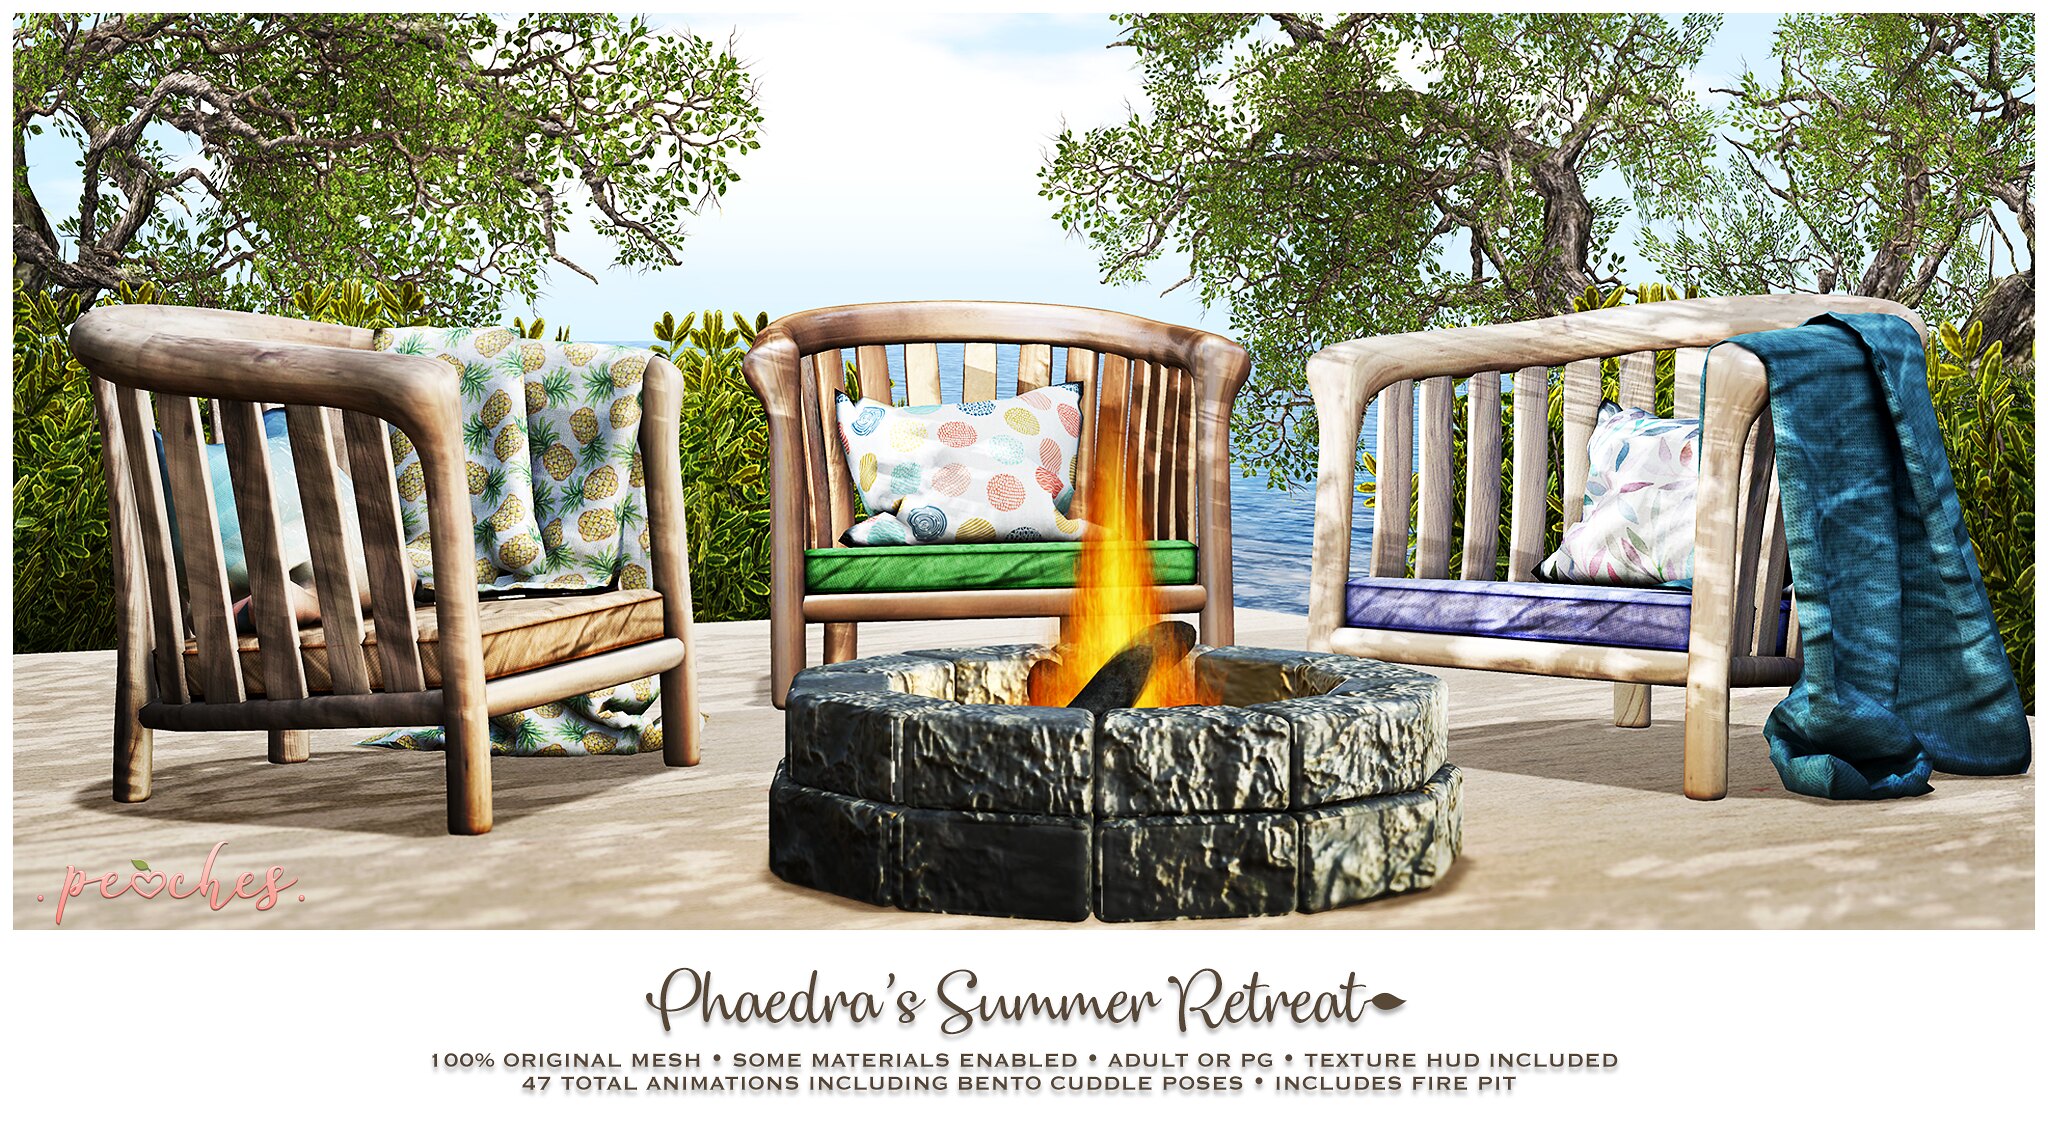 Peaches – Phaedra’s Summer Retreat